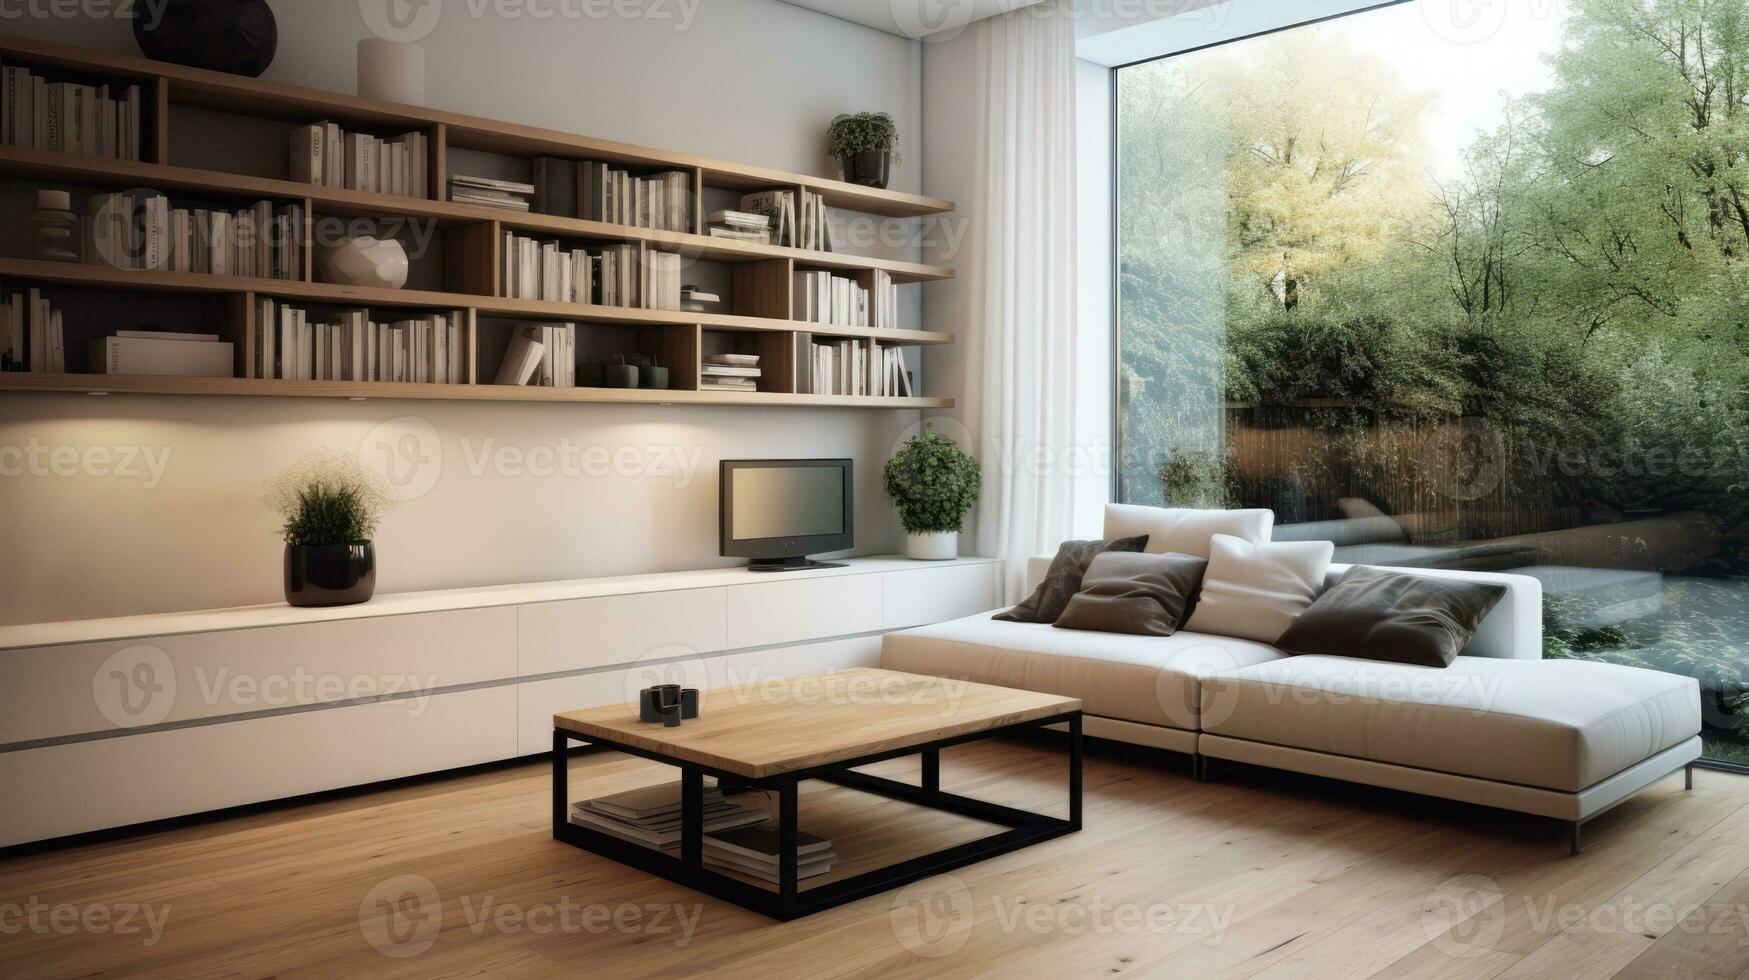 strak minimalistische decor verbeteren rendement in knus compact leven ruimten foto